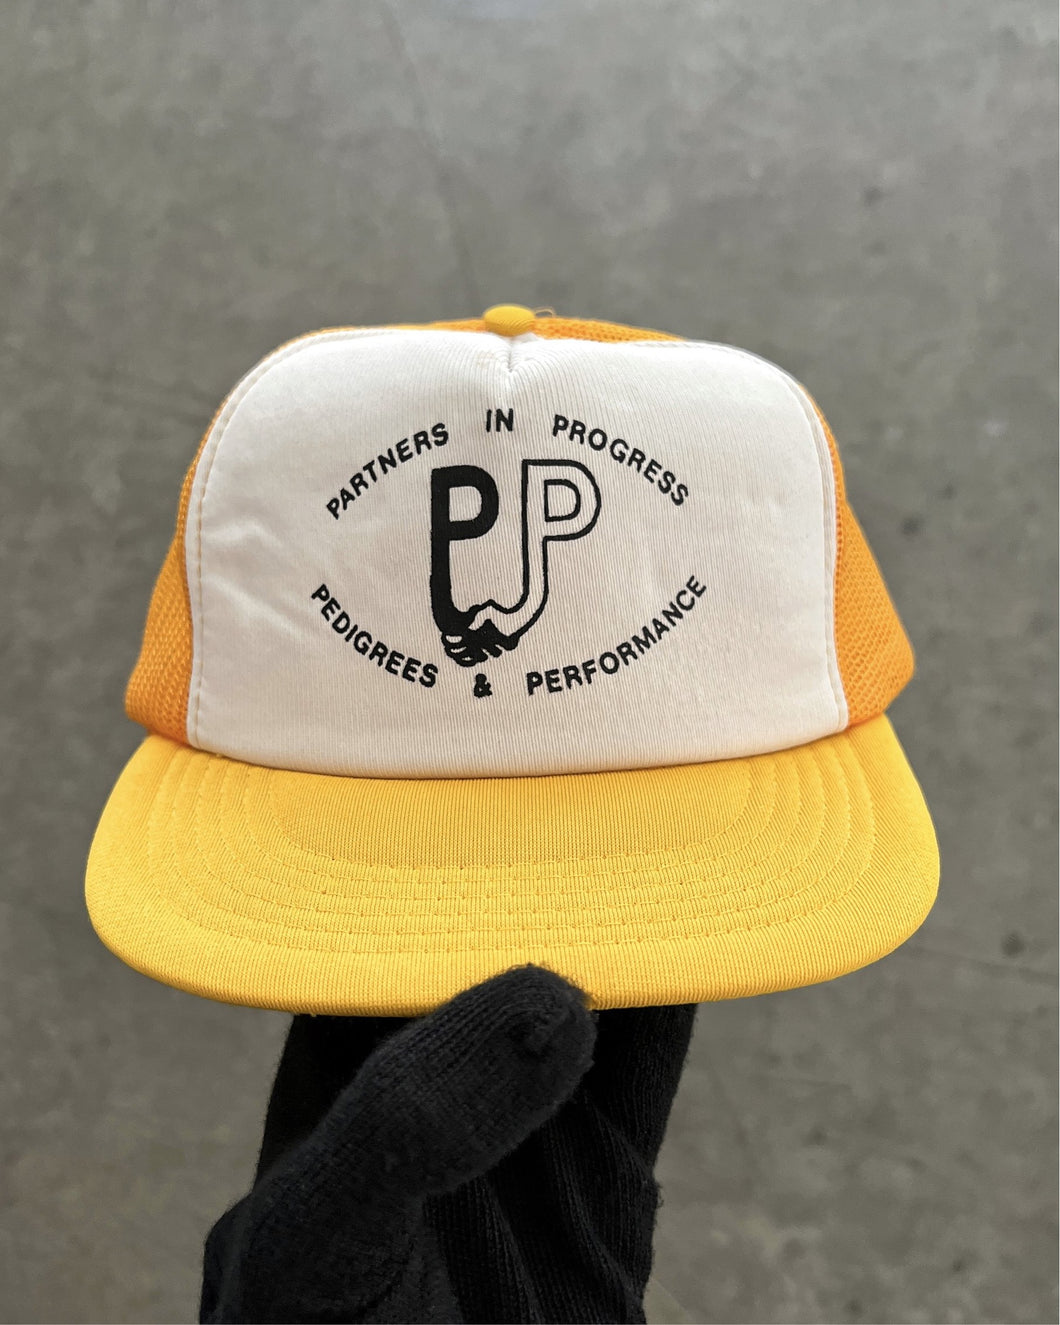 “PARTNERS IN PROGRESS” YELLOW FOAM TRUCKER HAT - 1990S